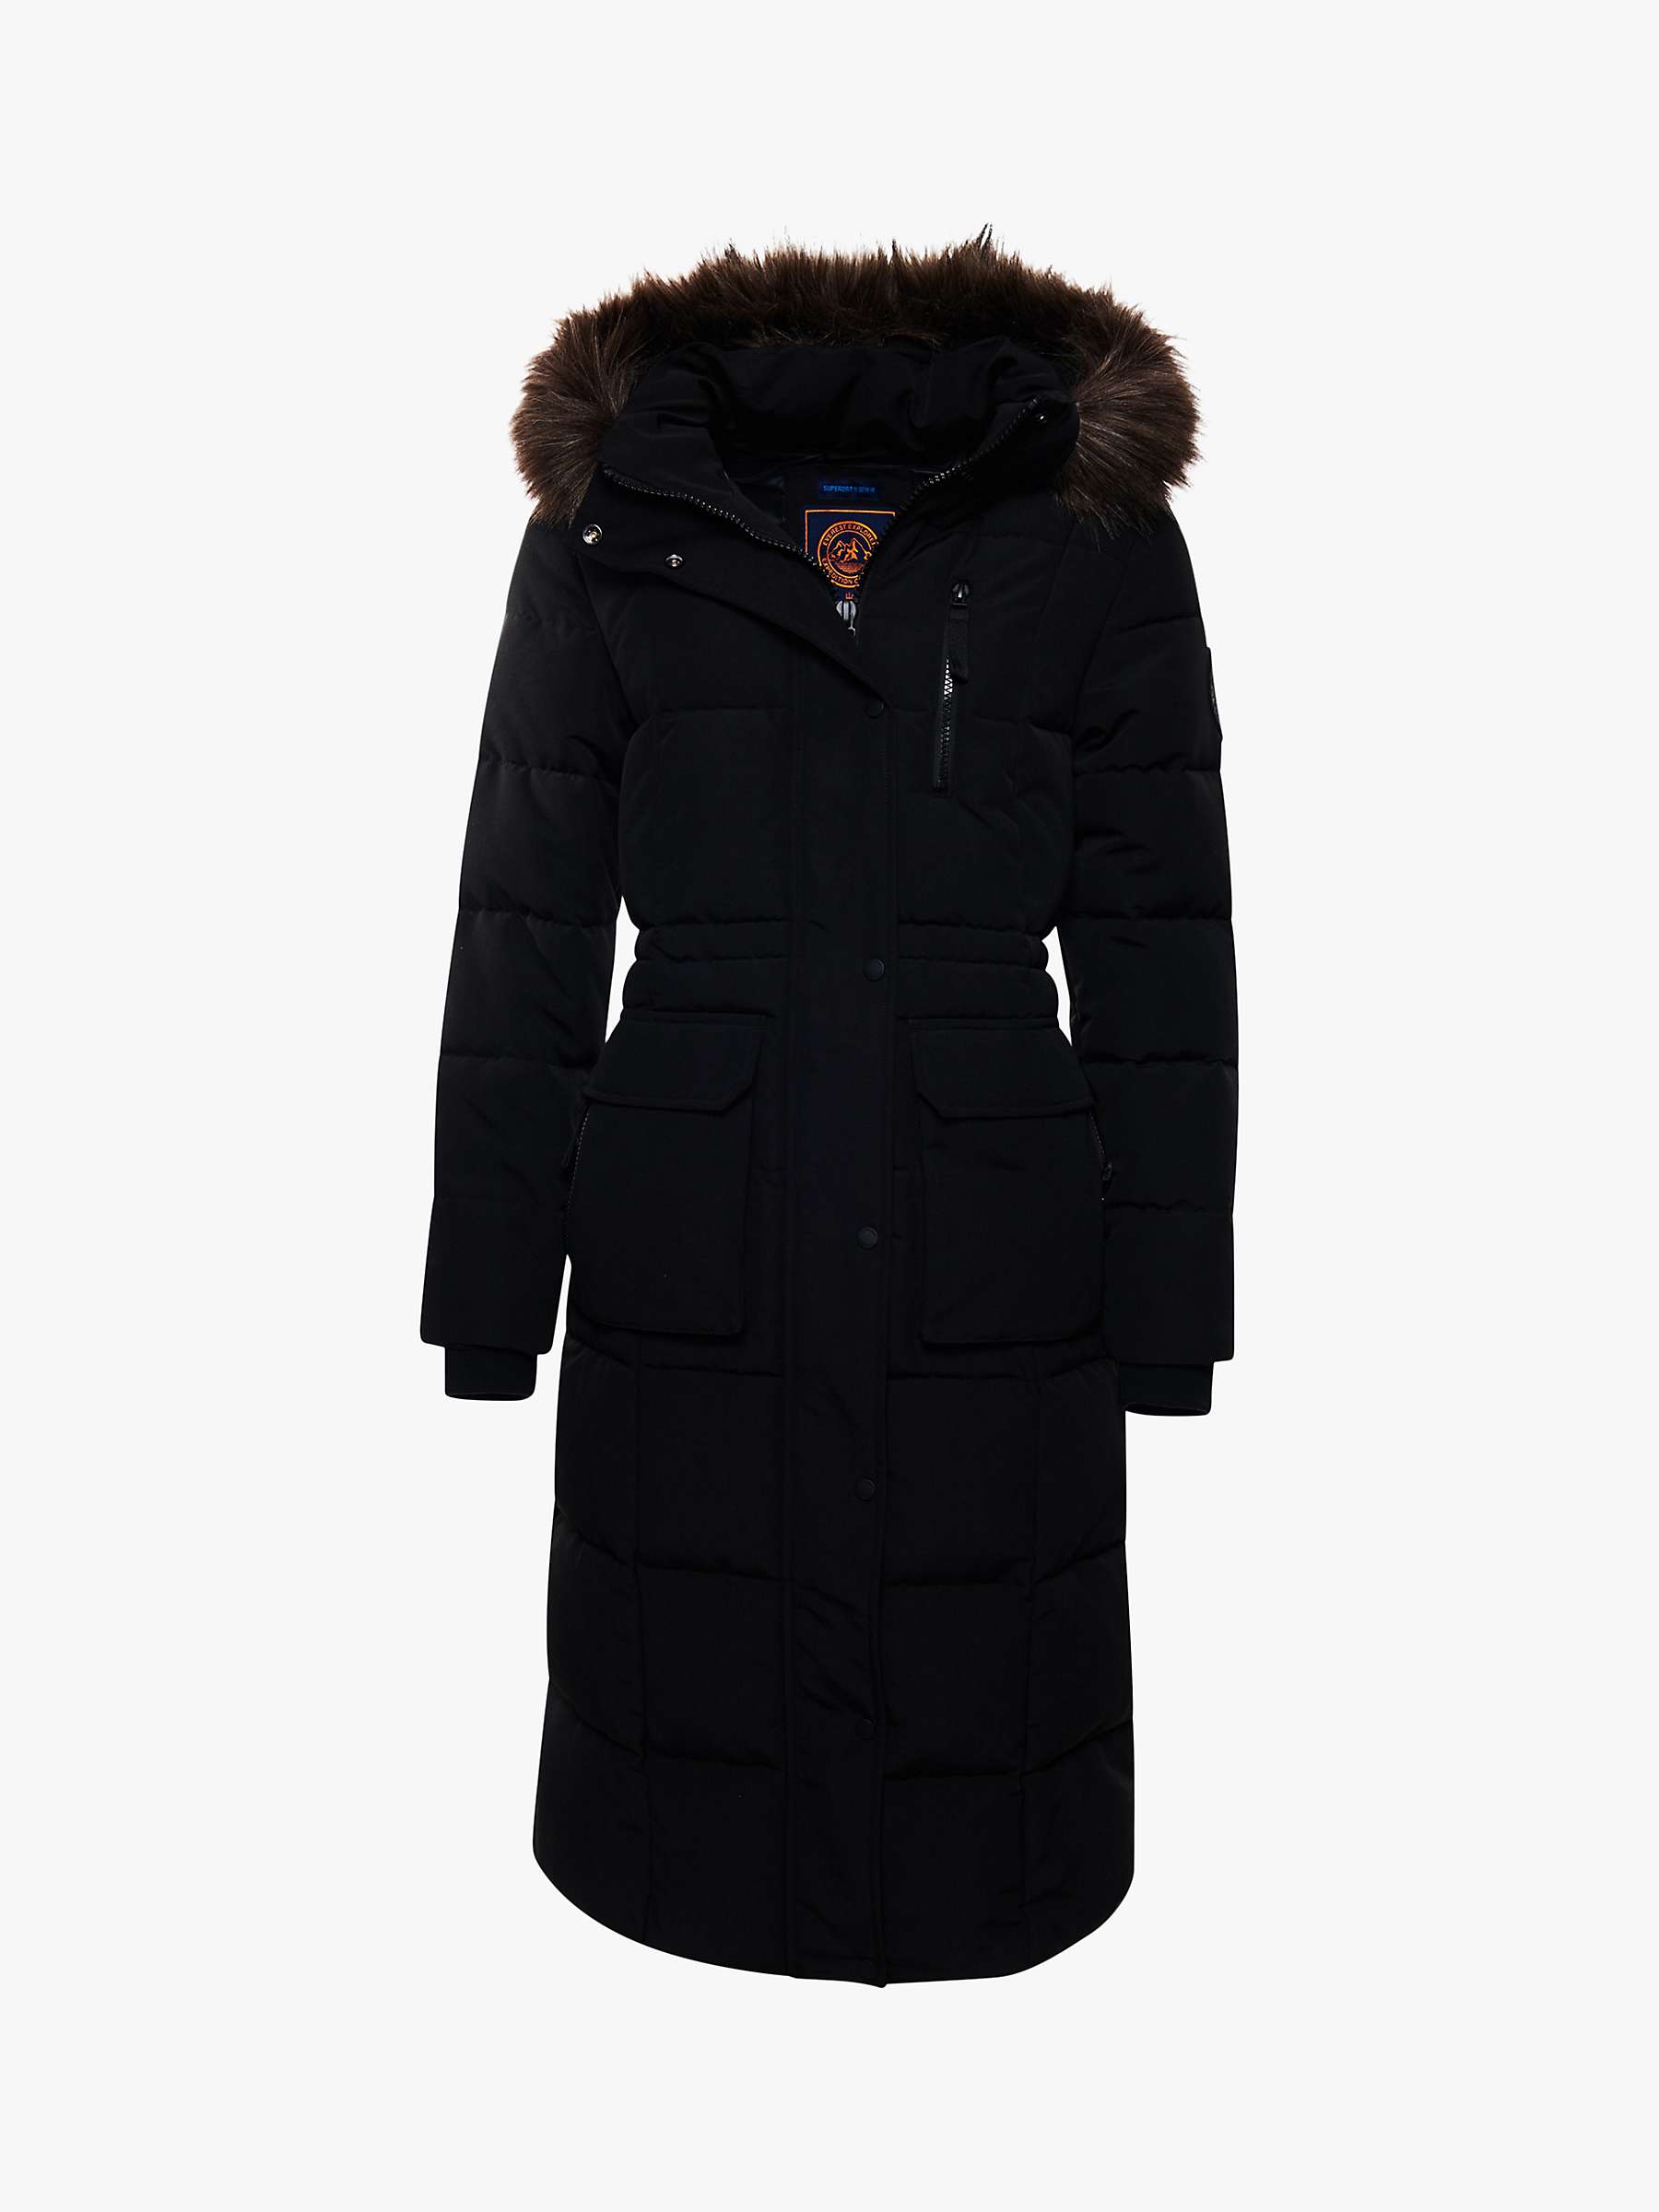 Buy Superdry Original & Vintage Everest Long Line Faux Fur Parka Jacket Online at johnlewis.com